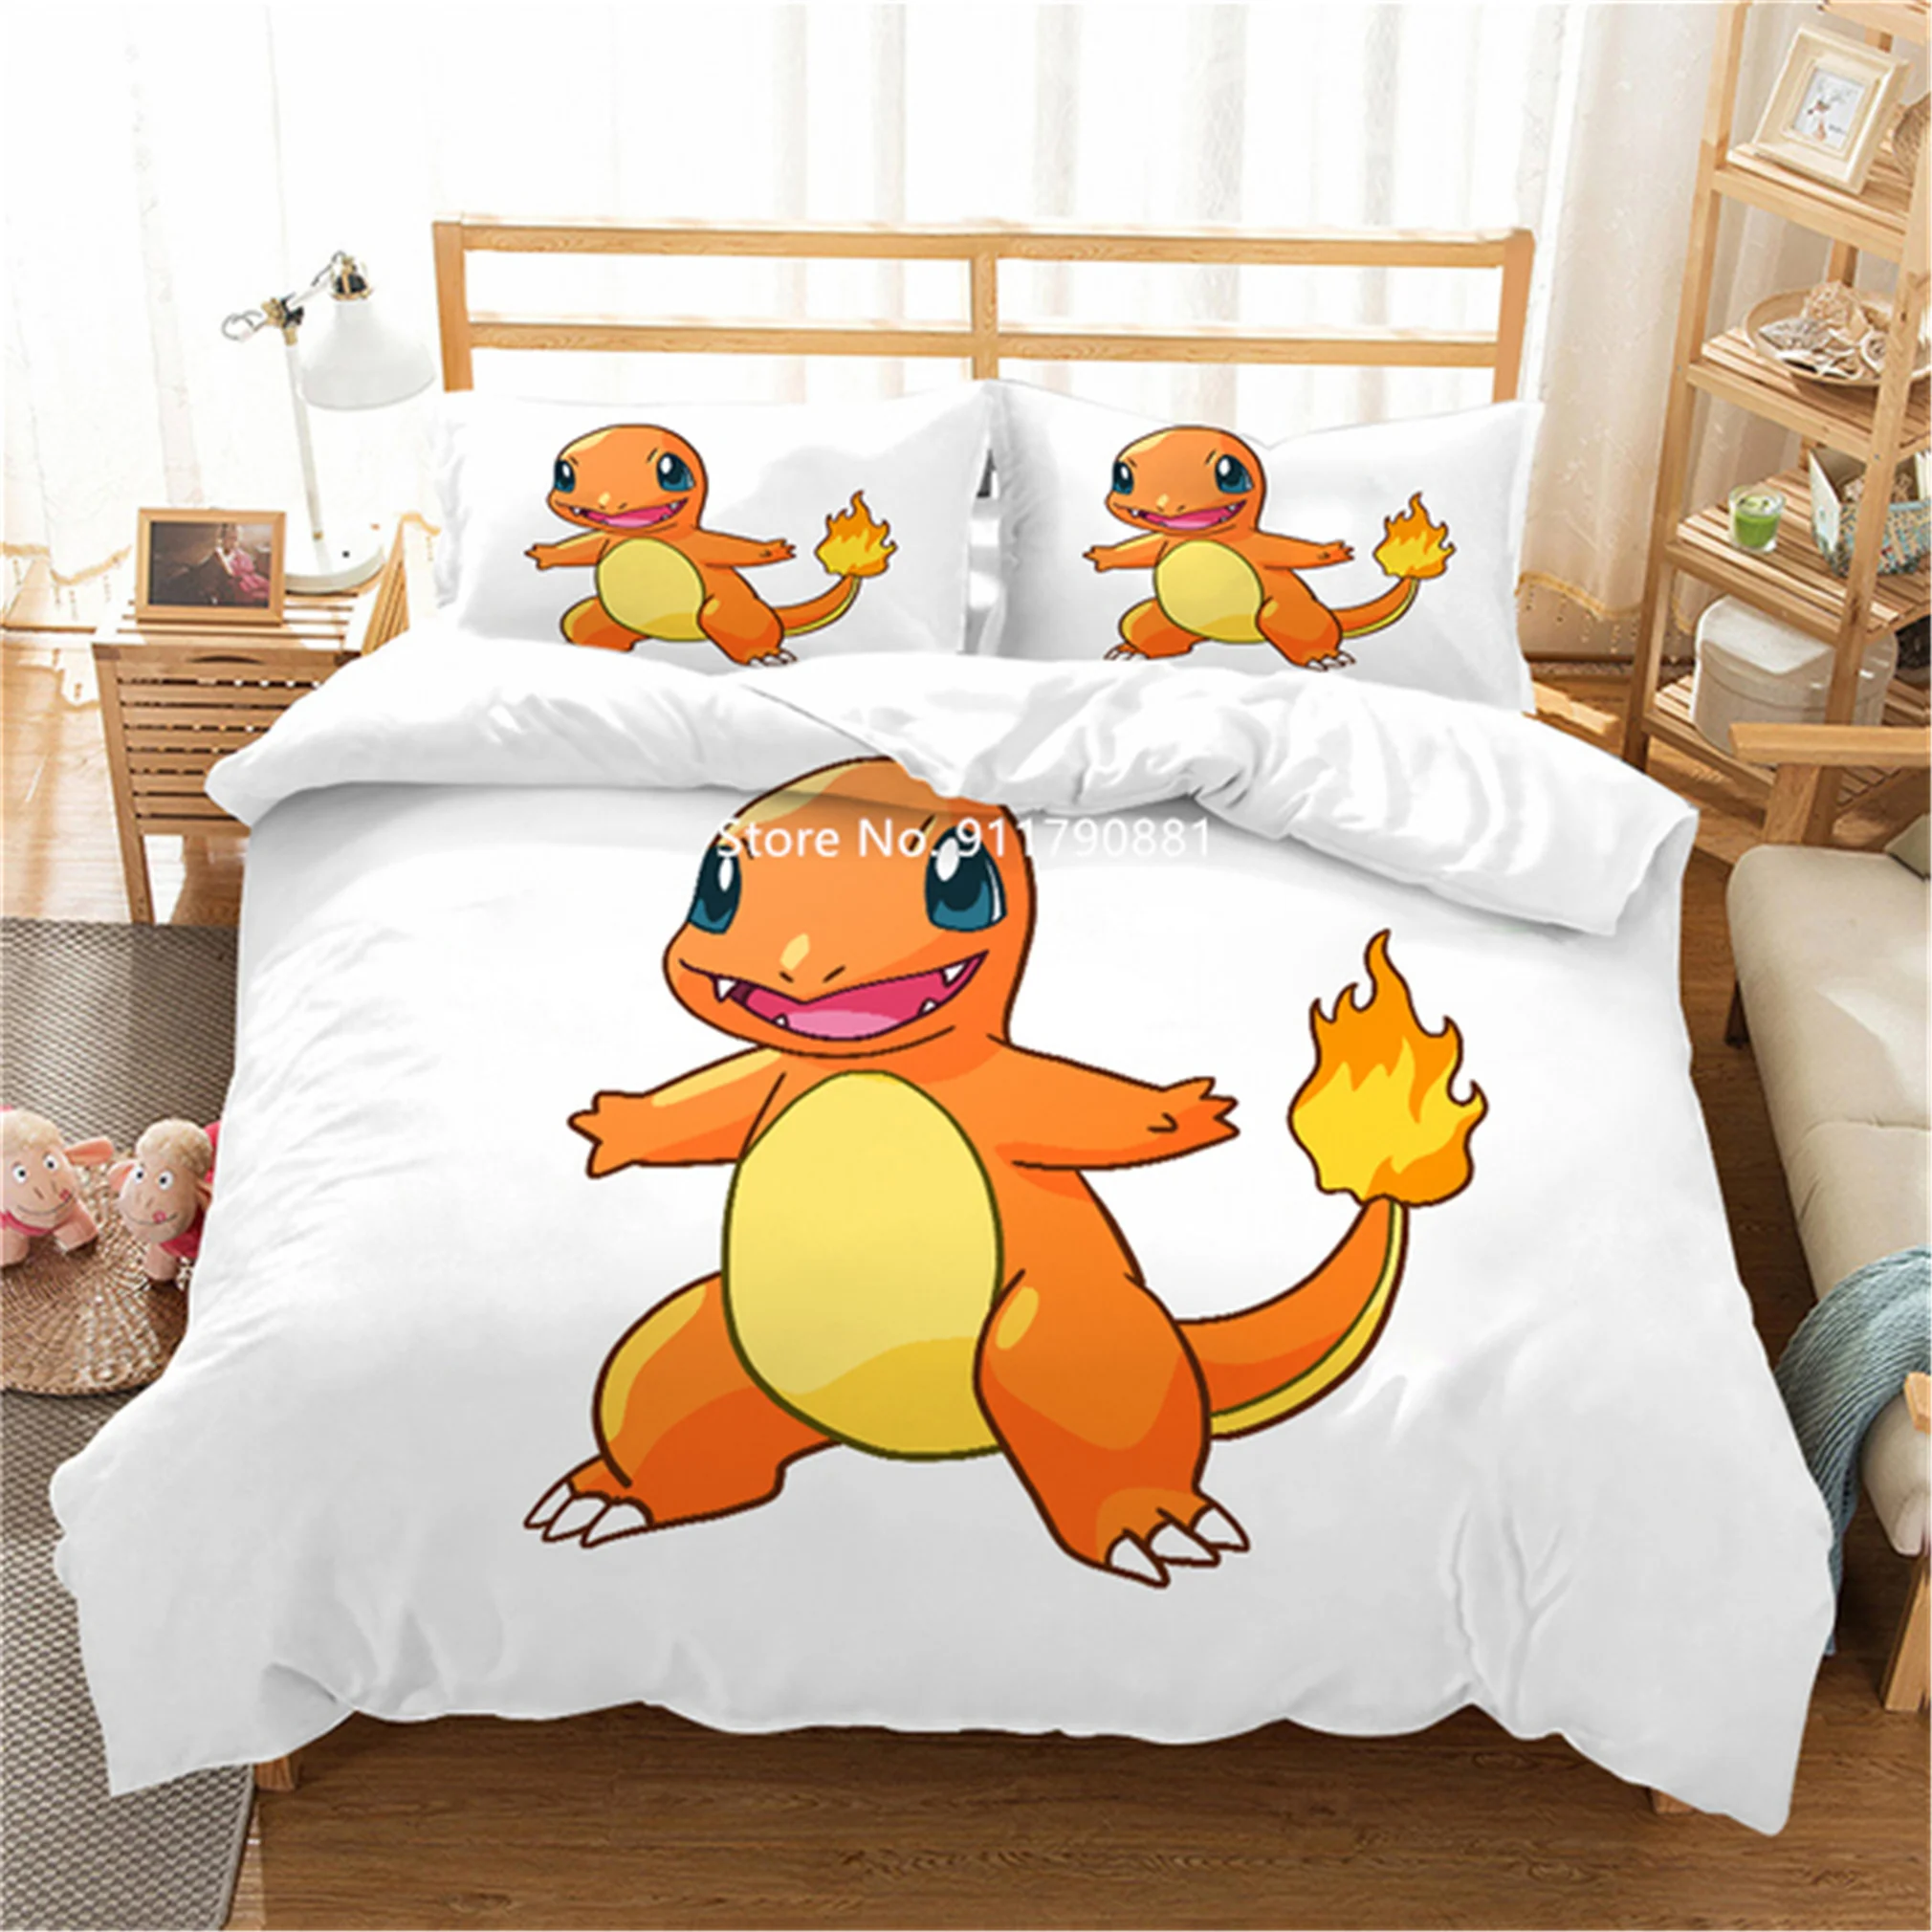 Bandai Pokemon Set biancheria da letto comodo copripiumino federa Set 2/3 pezzi Pikachu stampa animato decorazione camera da letto per bambini